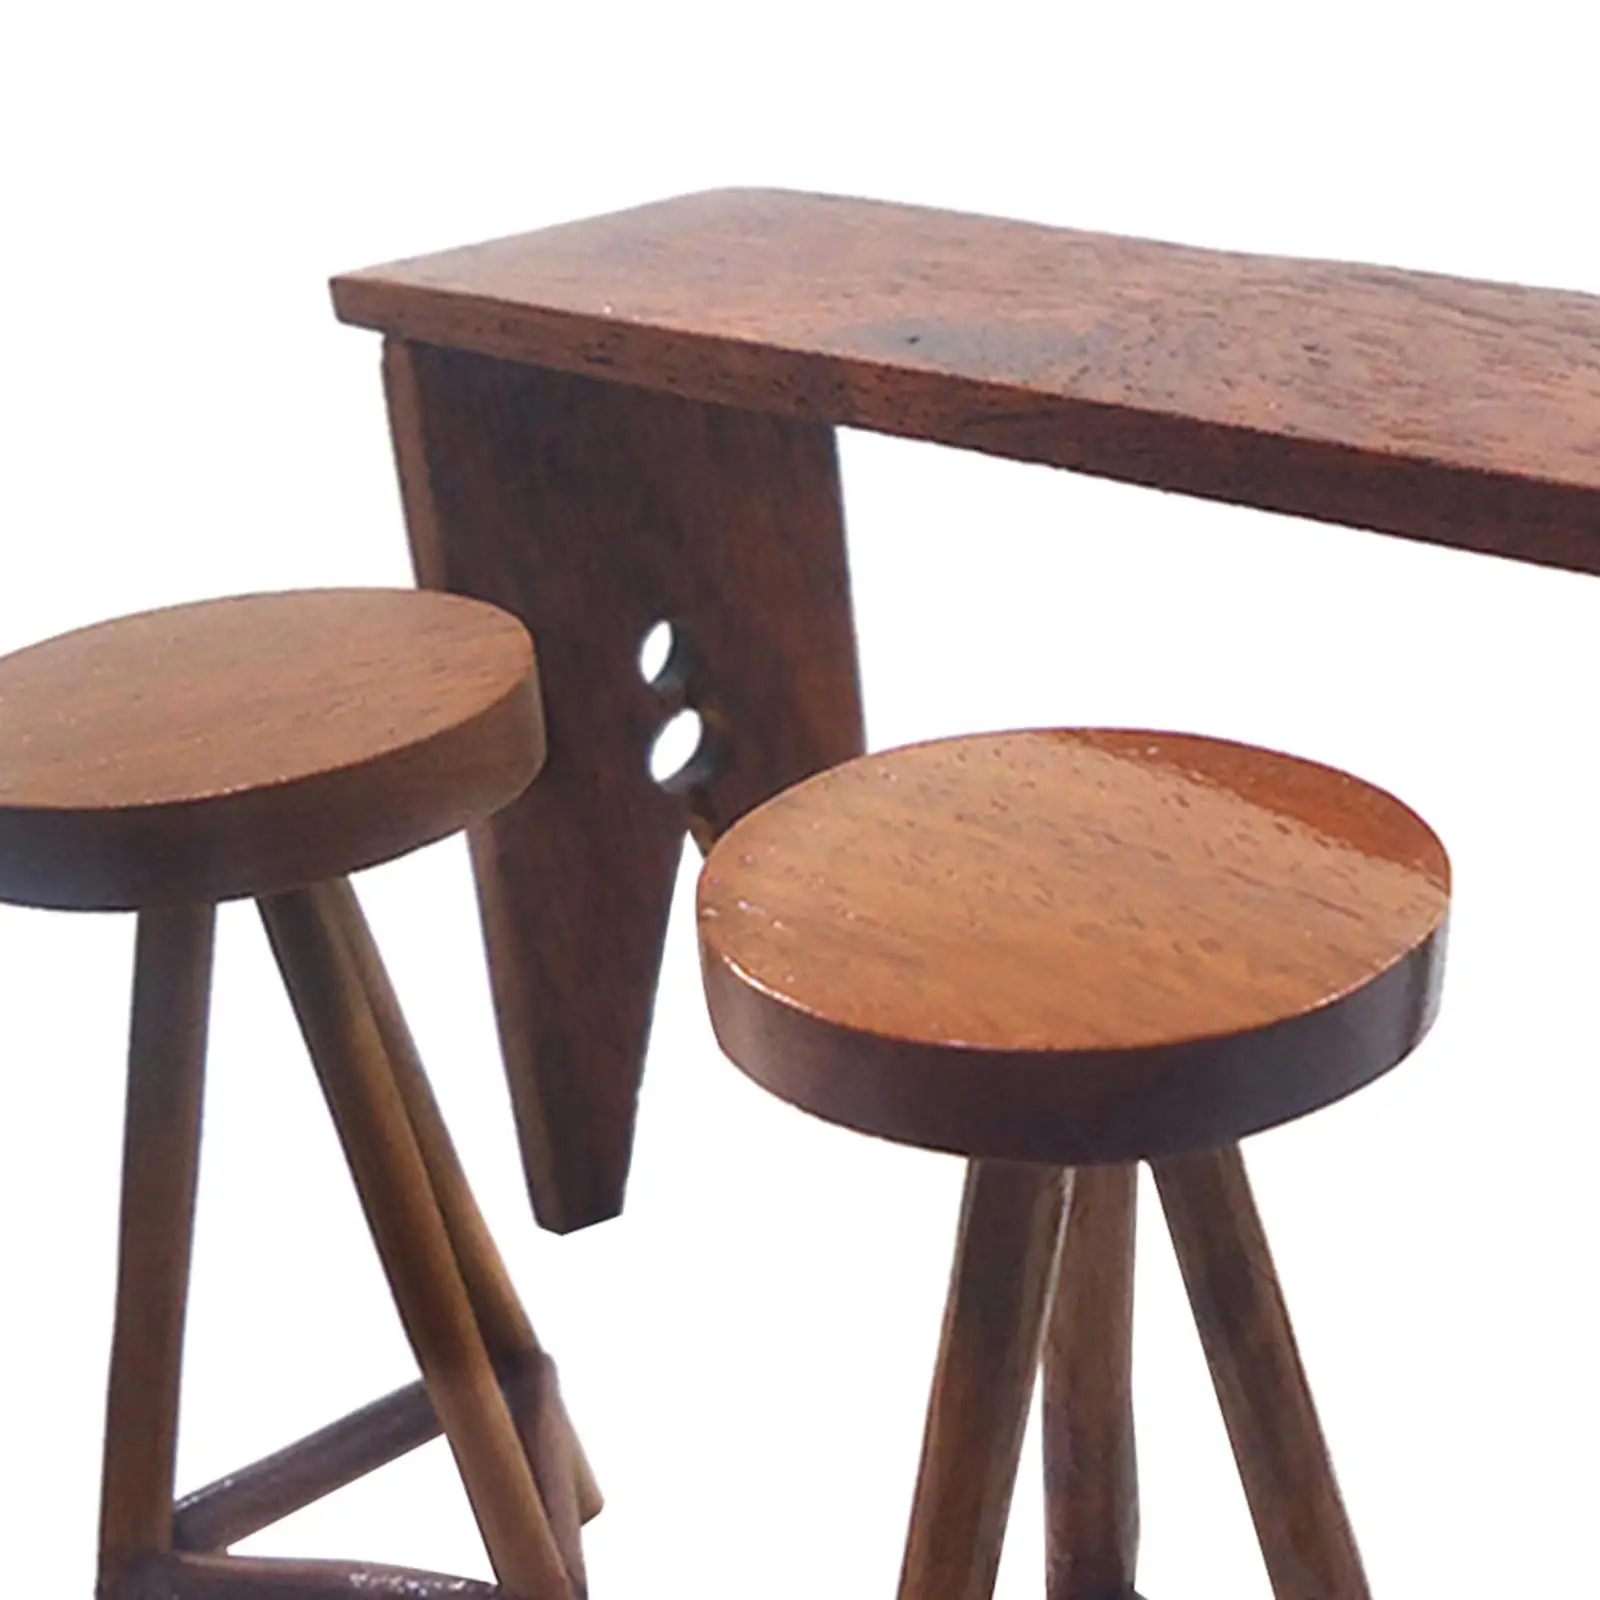 Miniature Bar Table High Chair Decor Wooden 1:12 for Dollhouse DIY Accessory